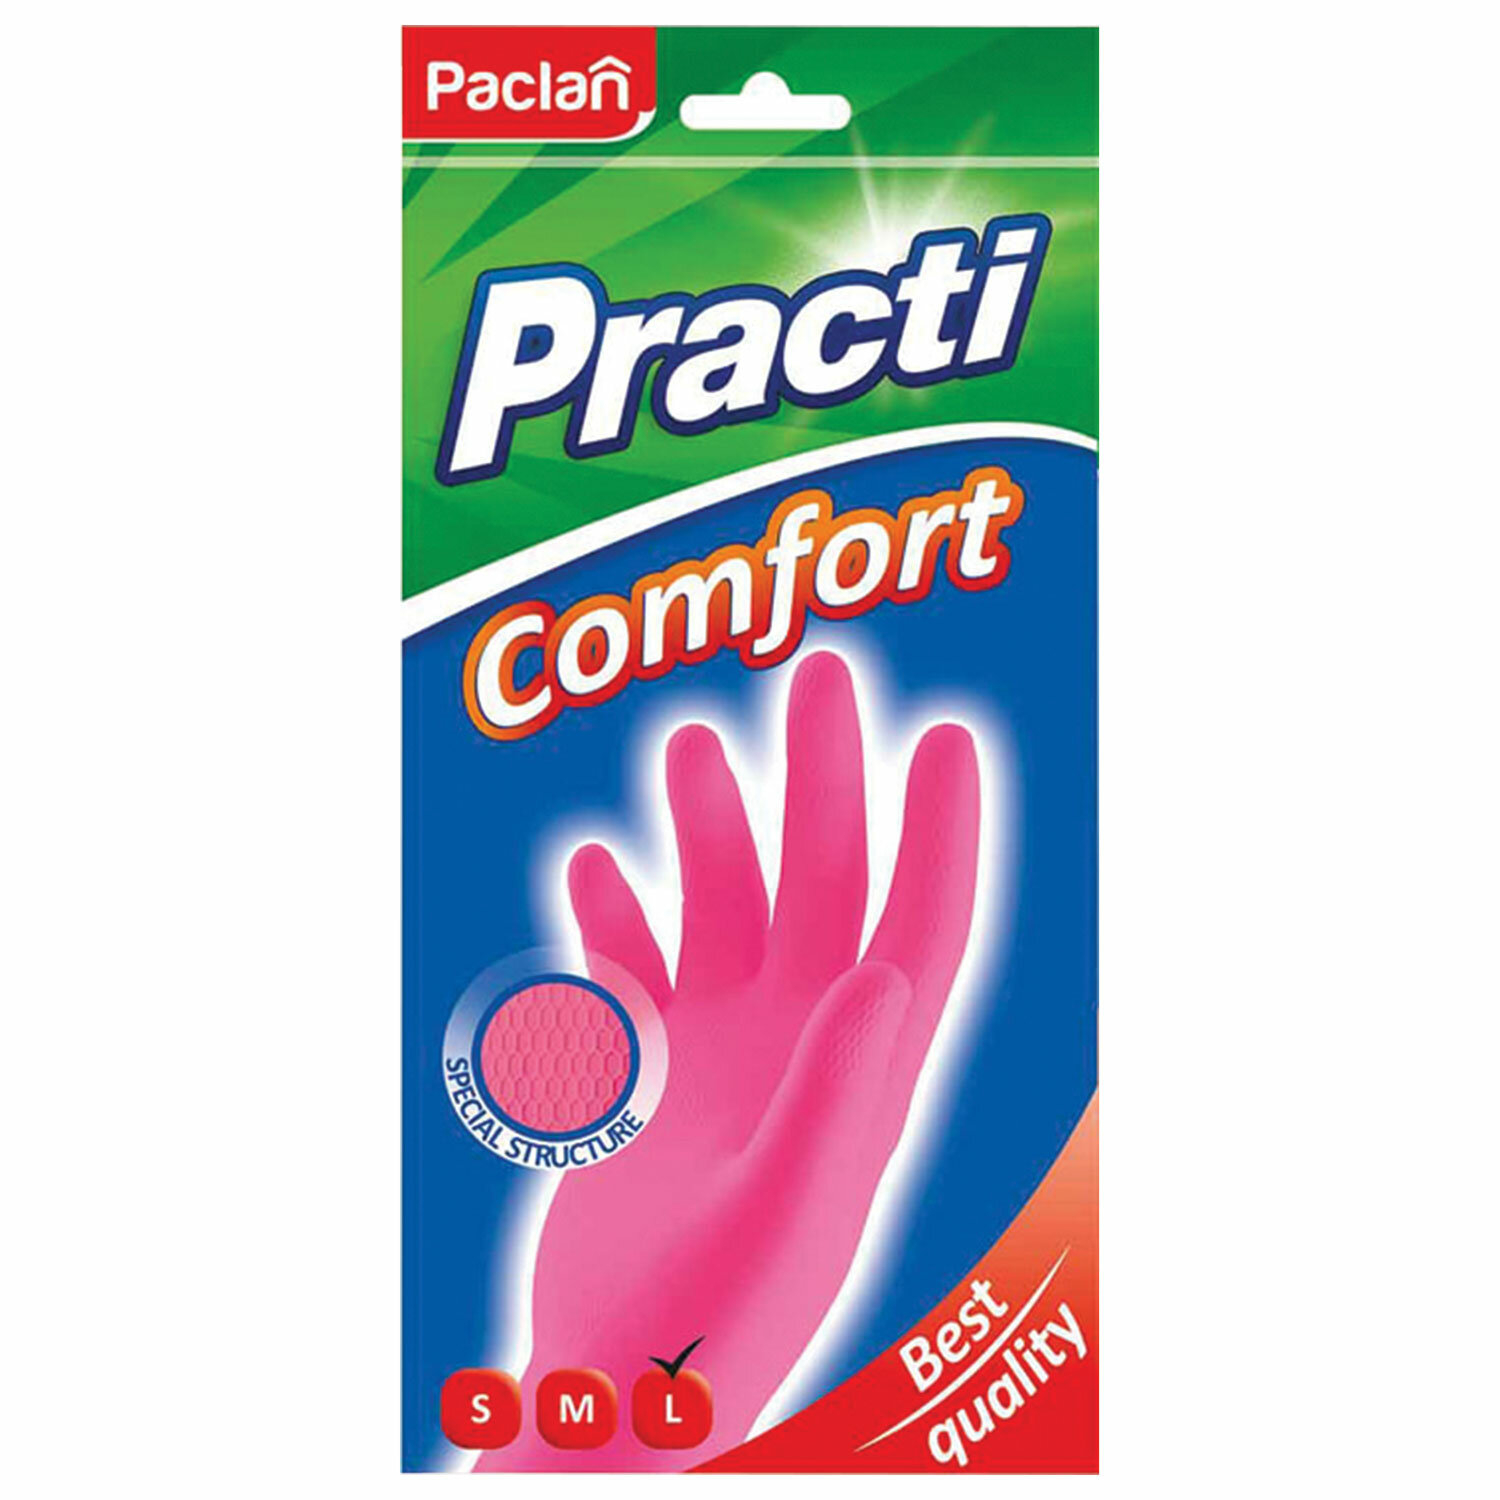 Перчатки резиновые Paclan extra dry размер L 1 пара в ассортименте